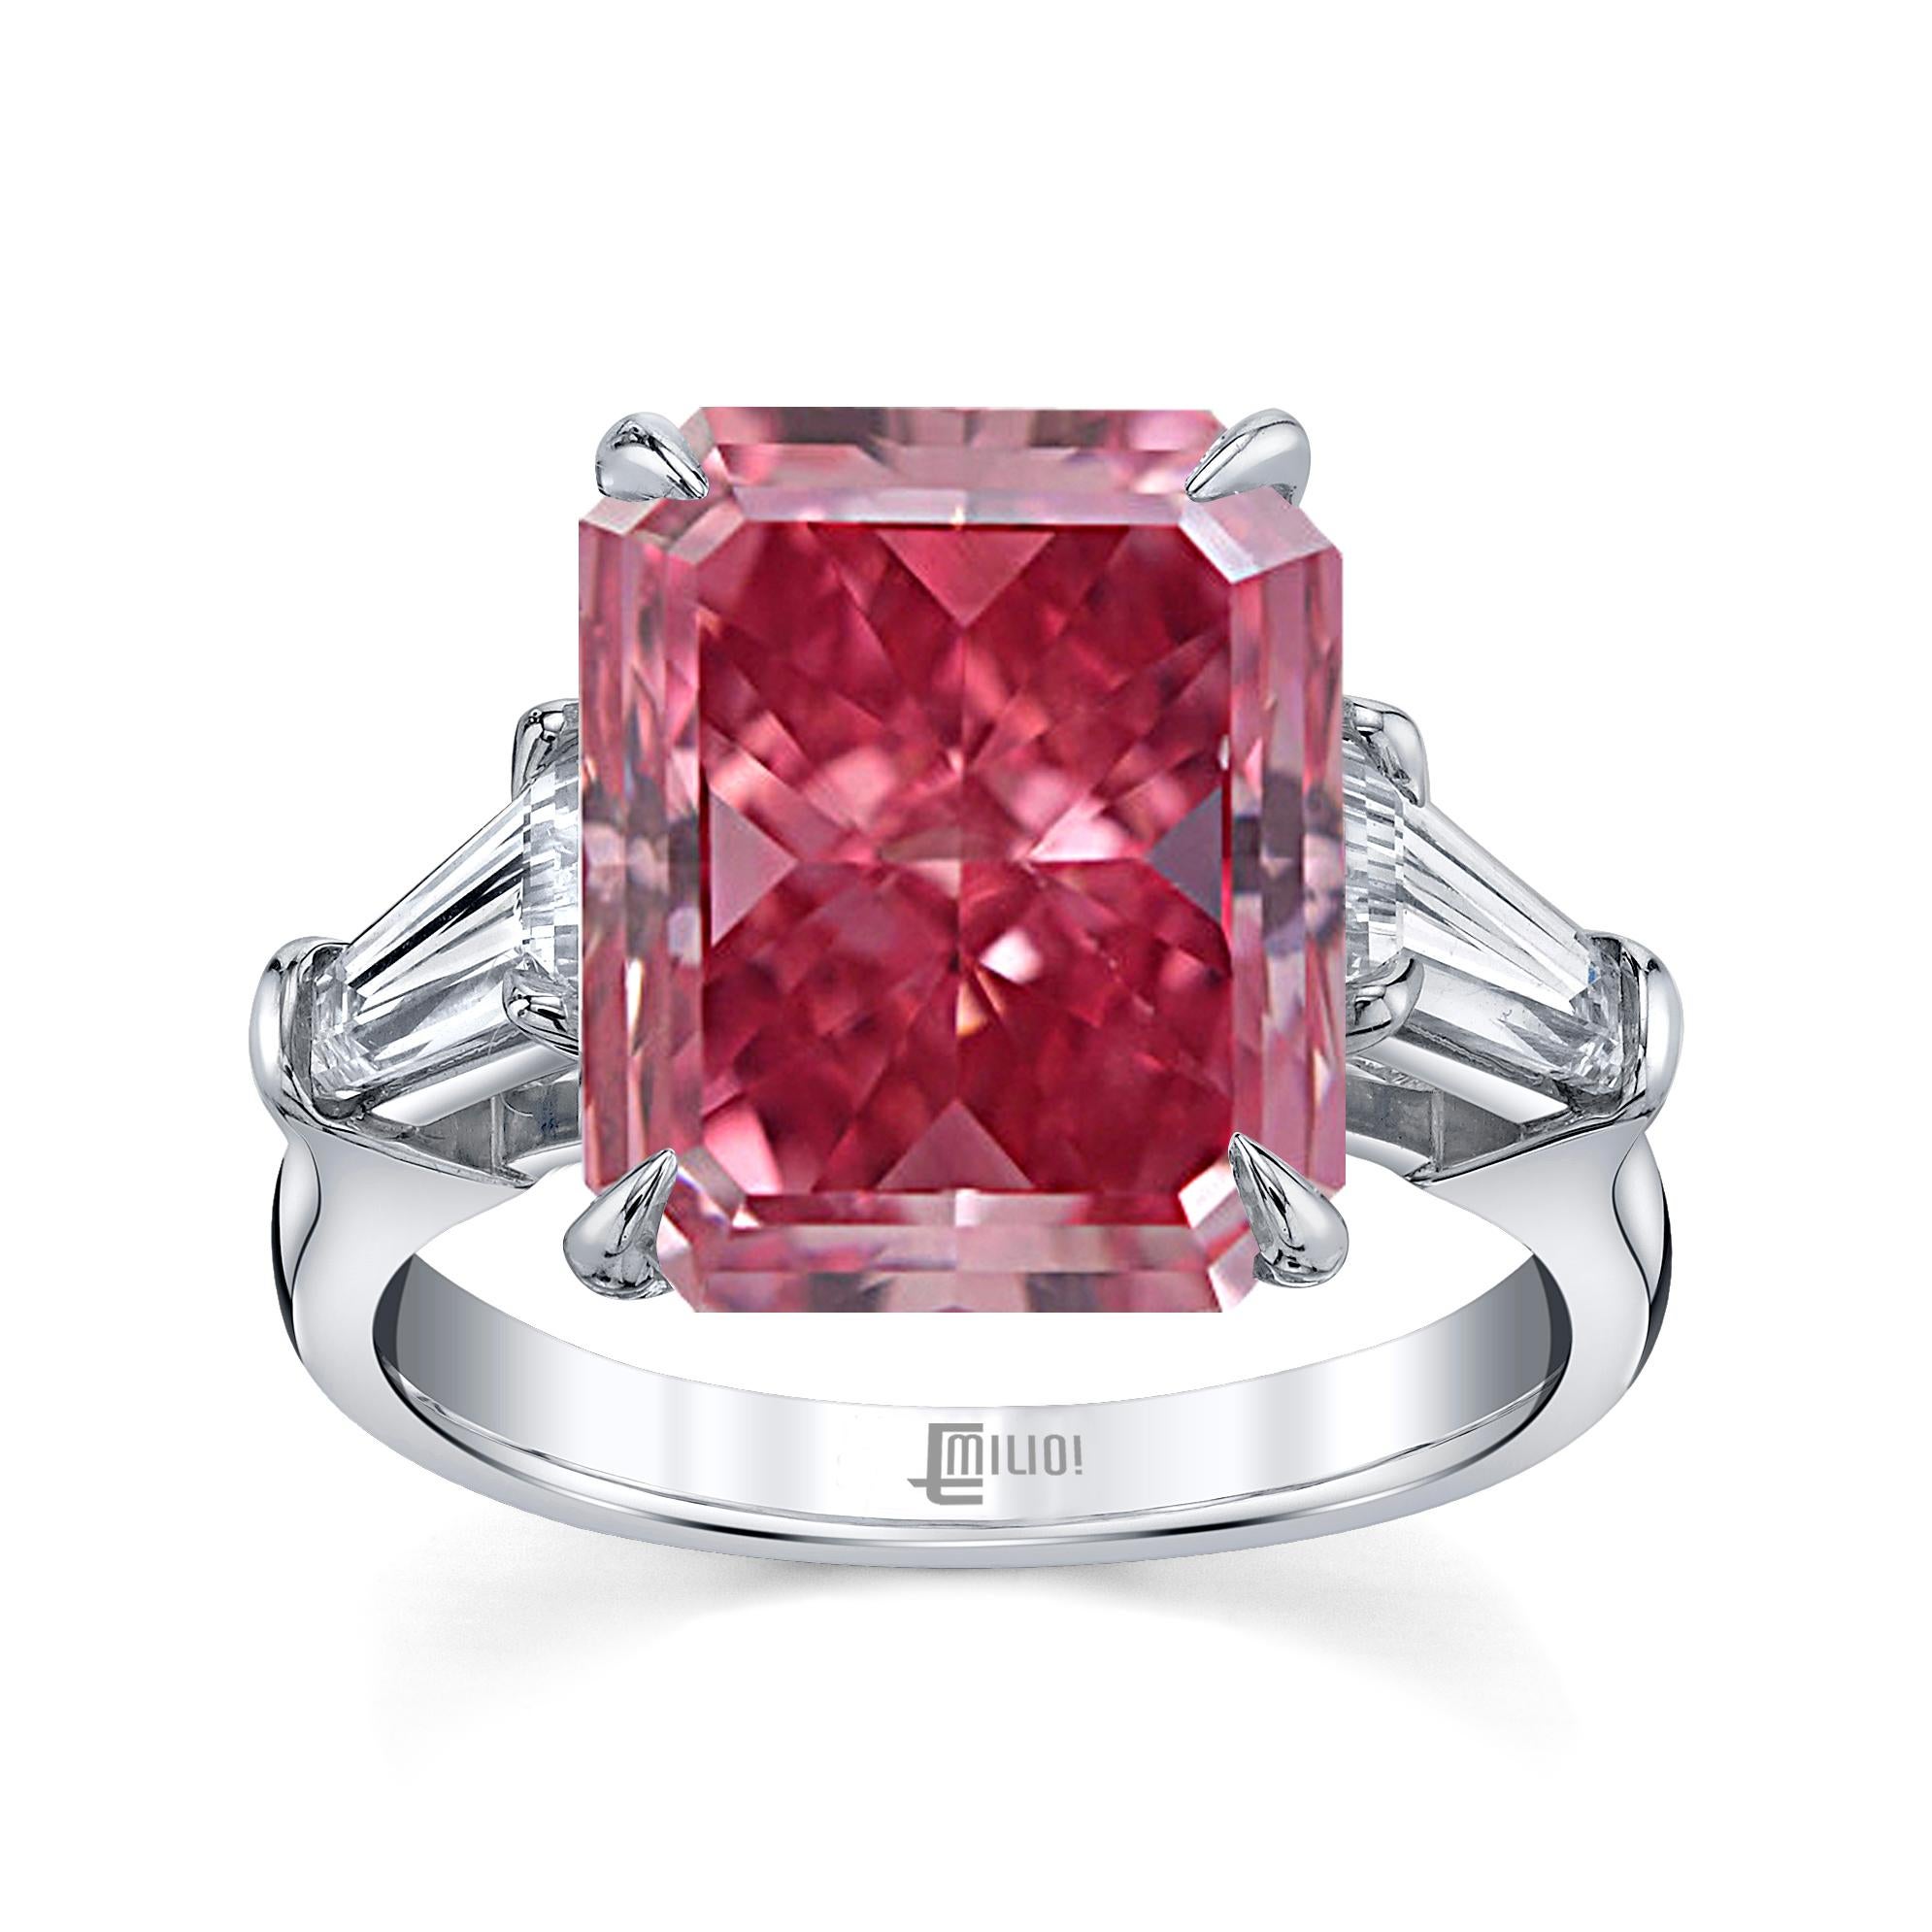 Aus dem Museumsgewölbe von Emilio Jewelry New York,
Ein magischer Ring mit dem Besten vom Besten, einem GIA-zertifizierten, lebhaften, rein rosafarbenen Diamanten von knapp 1 Karat. Dieser Diamant hat keinen Oberton. Das ungefähre Gesamtgewicht ist